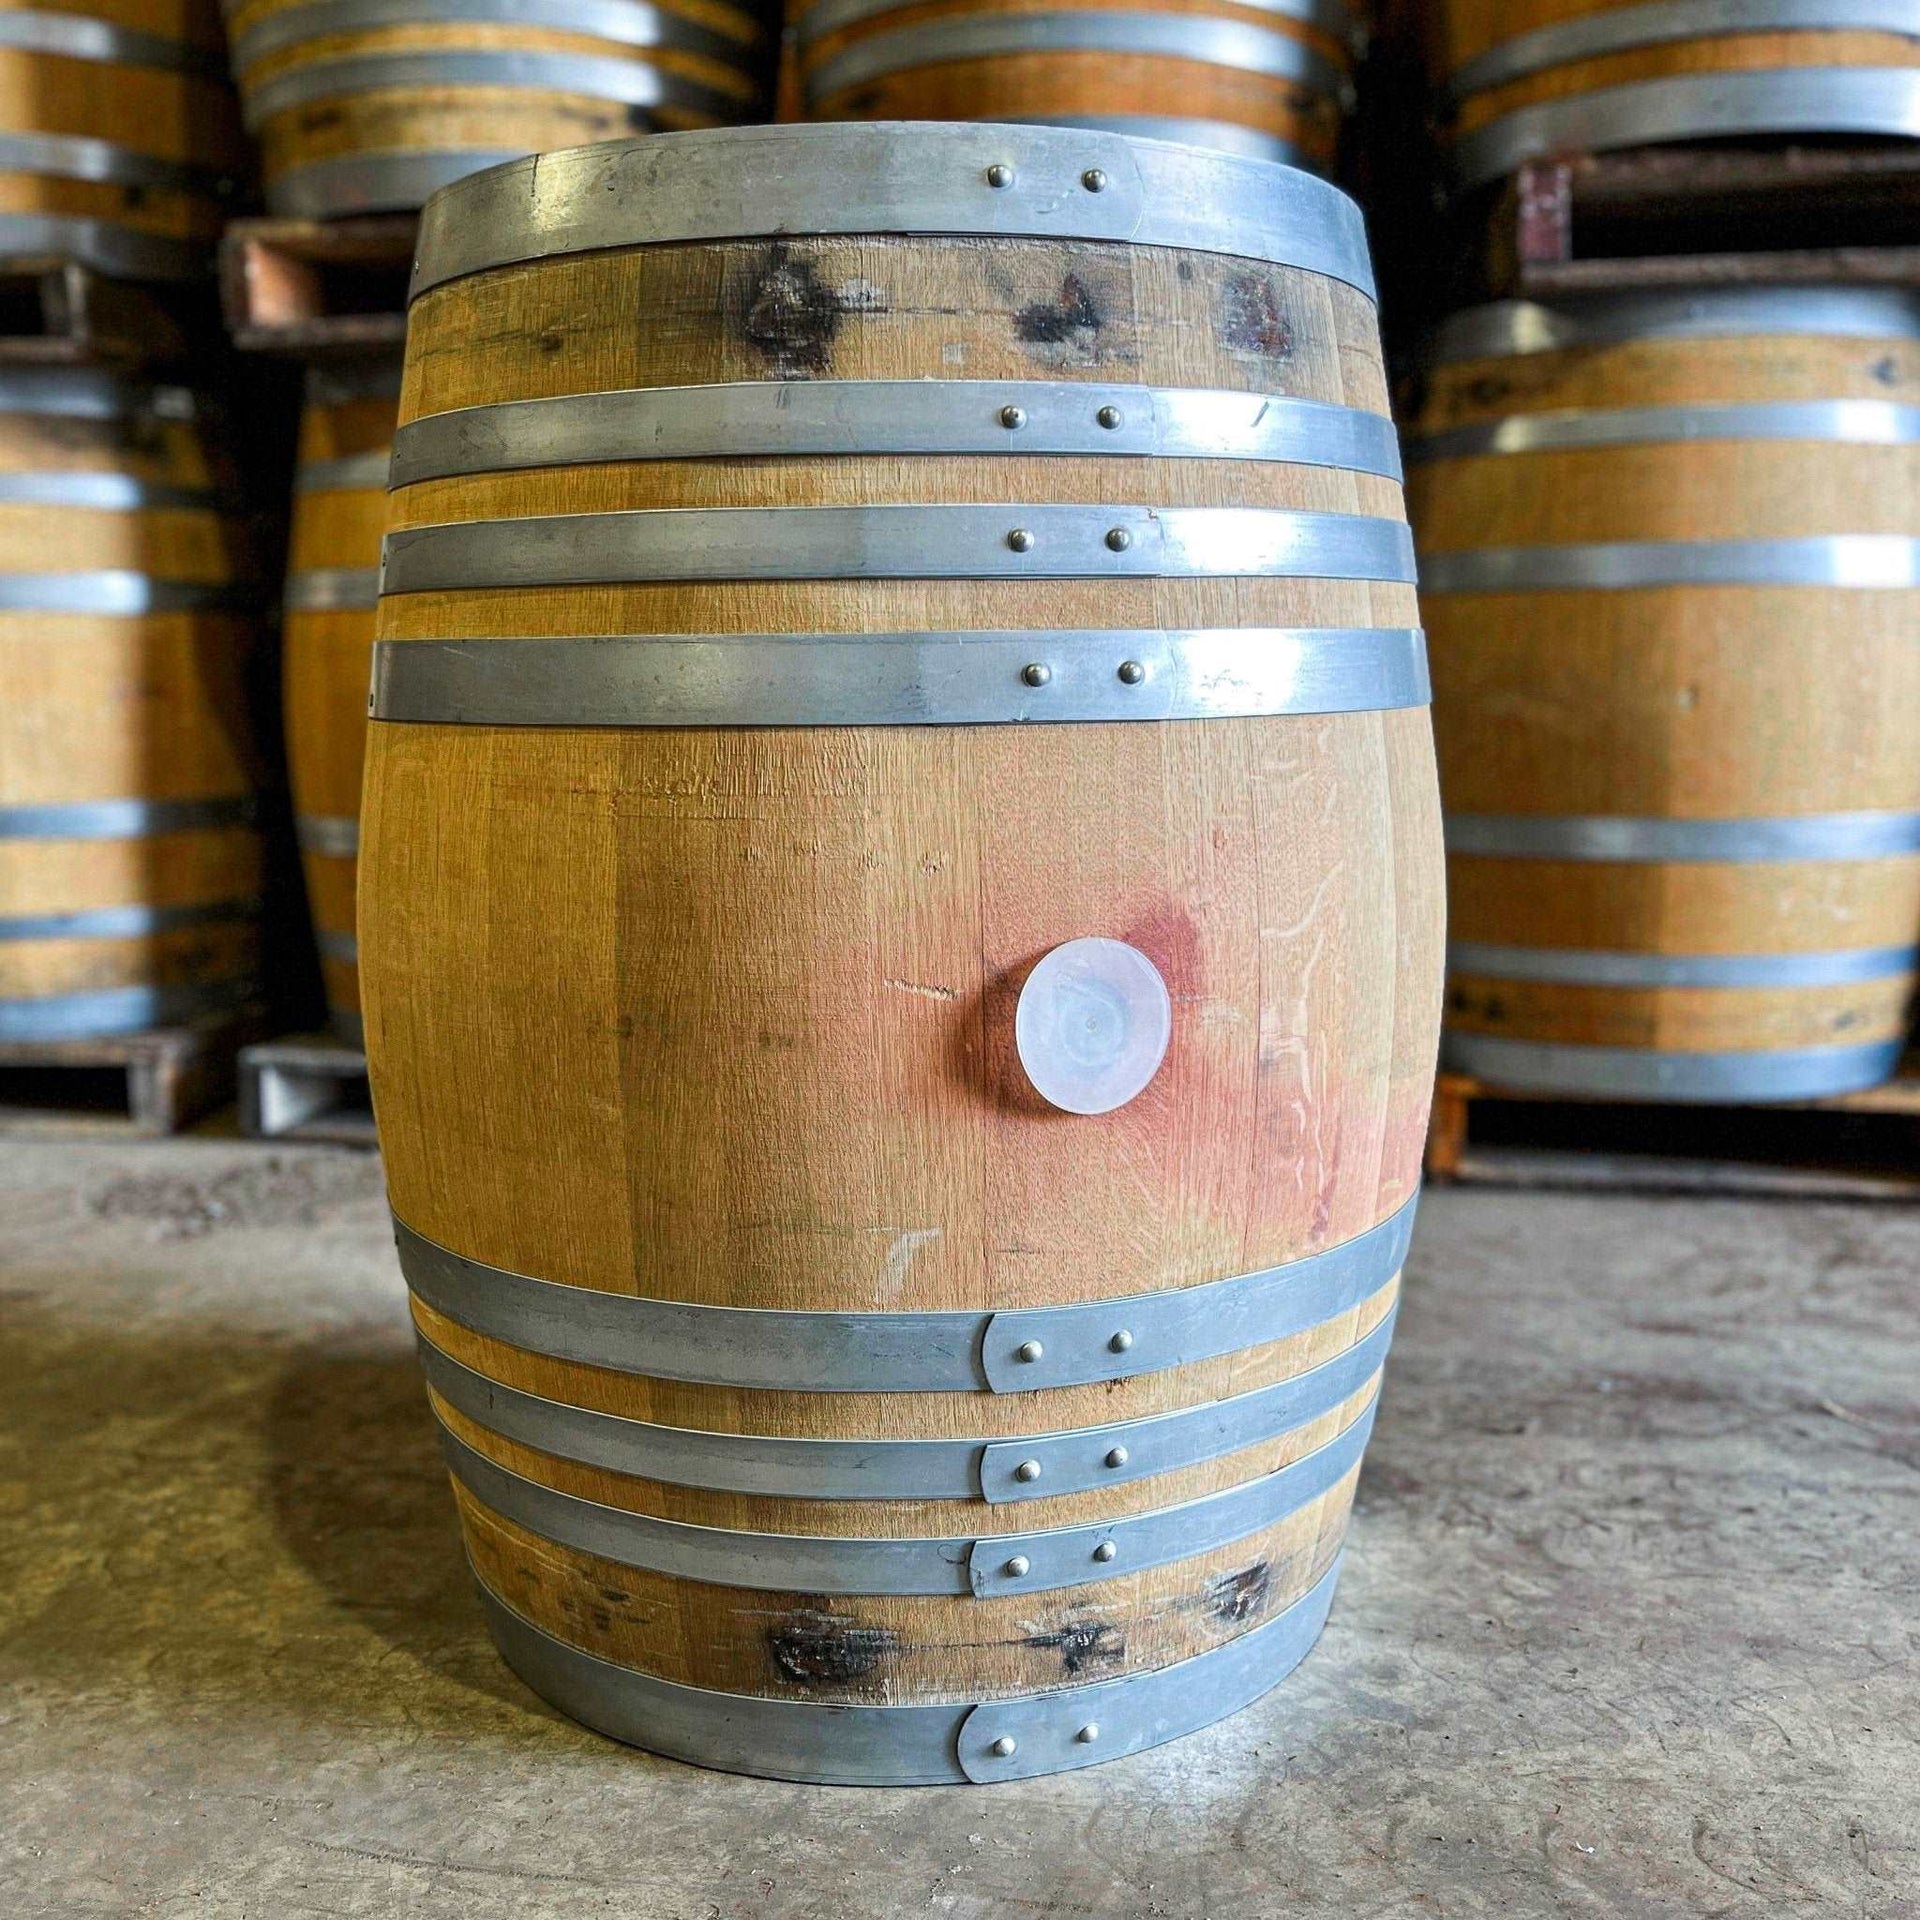 228 Litre Red Cabernet Sauvignon Wine Barrel - American Oak - The County Cooperage